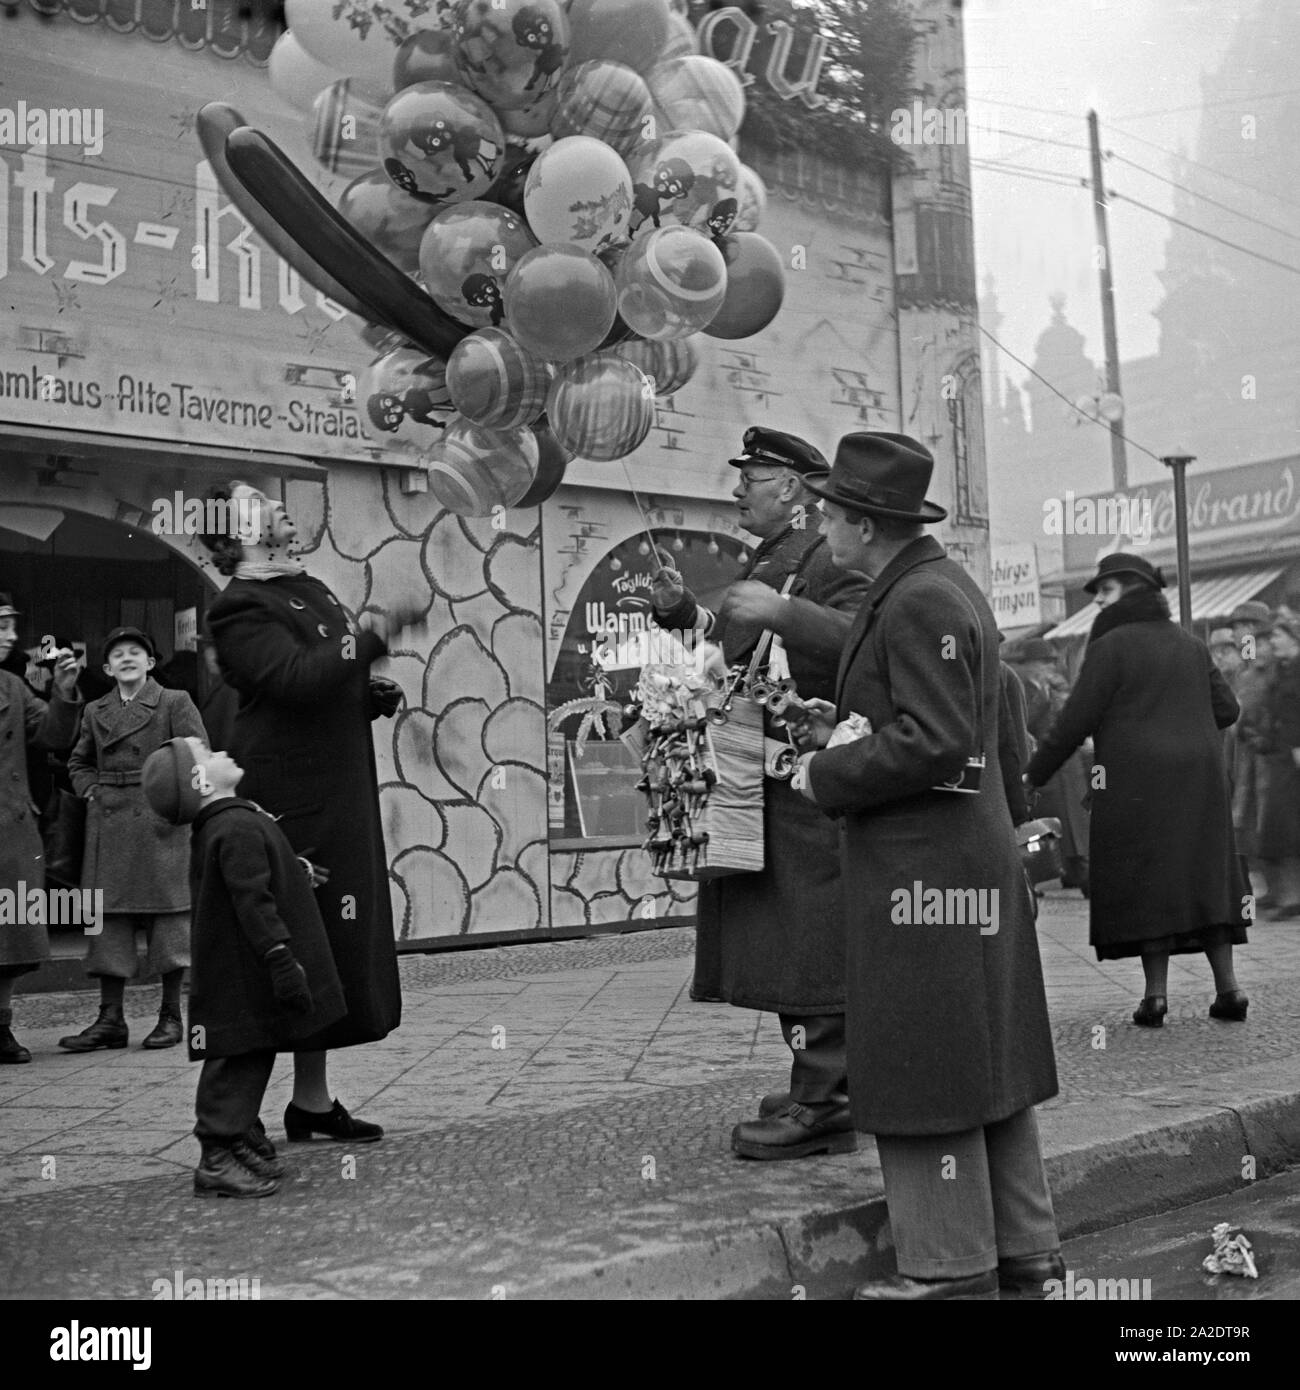 Ein kleiner Junge steht nur Luftballonverkäufer senneur Mutter Haus am Eingang des Weihnachtsmarkt Deutschland, 1930 er Jahre. Un petit garçon avec sa mère debout par un vendeur de ballon à l'entrée du marché de noël, Allemagne 1930. Banque D'Images